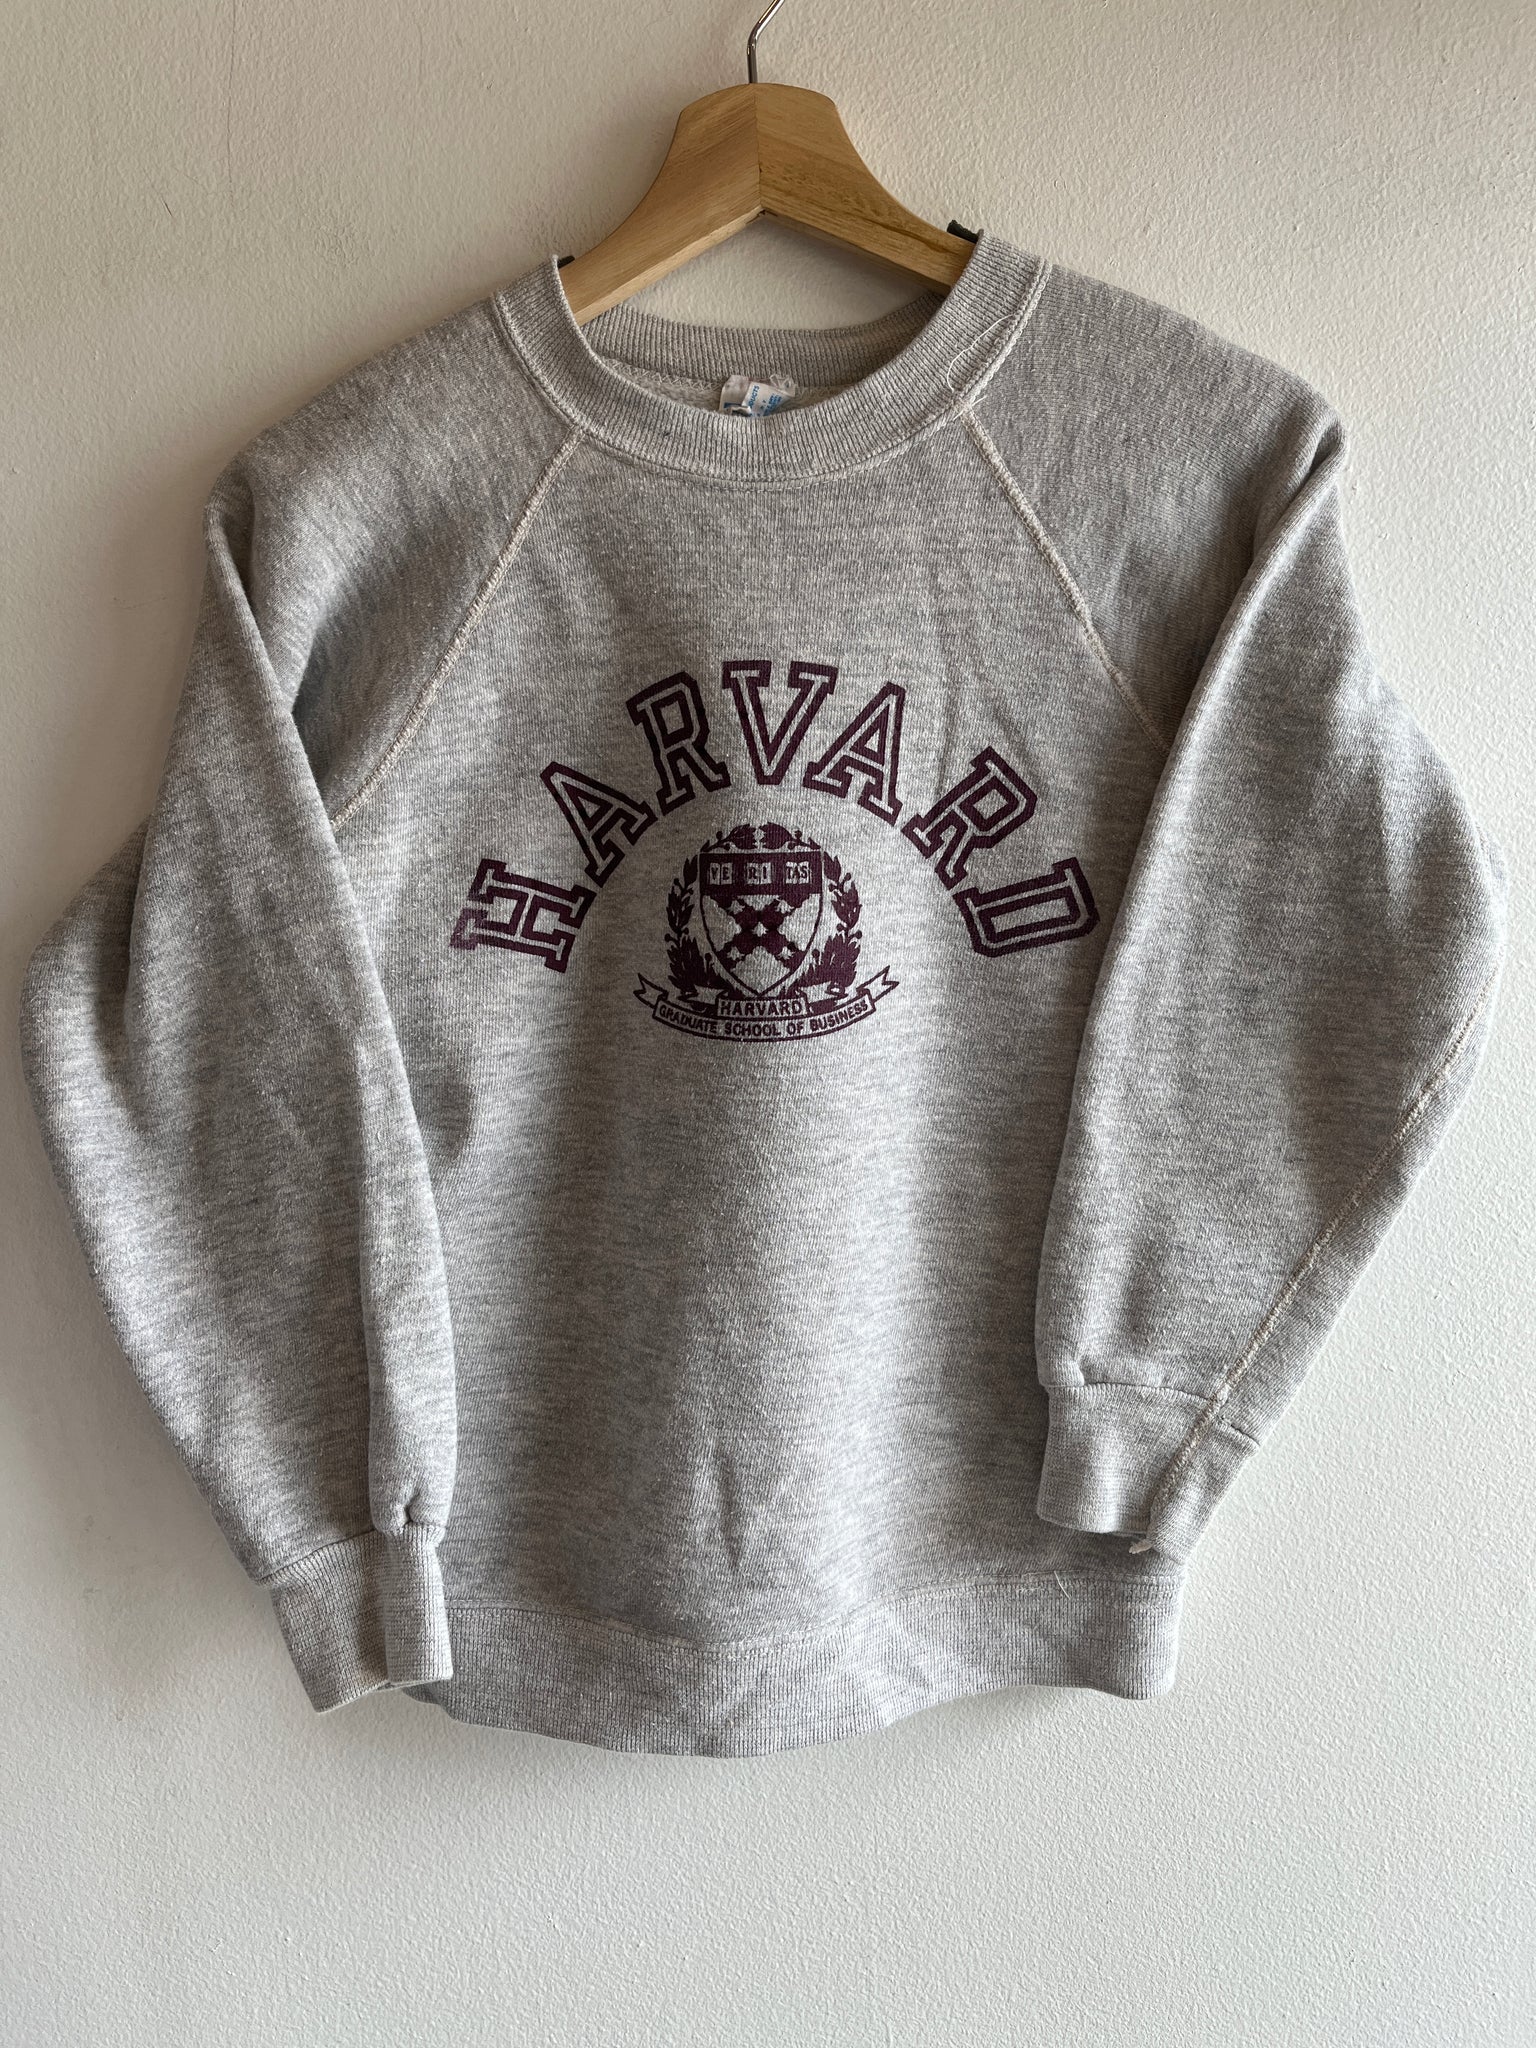 Vintage 1970’s Harvard Sweatshirt